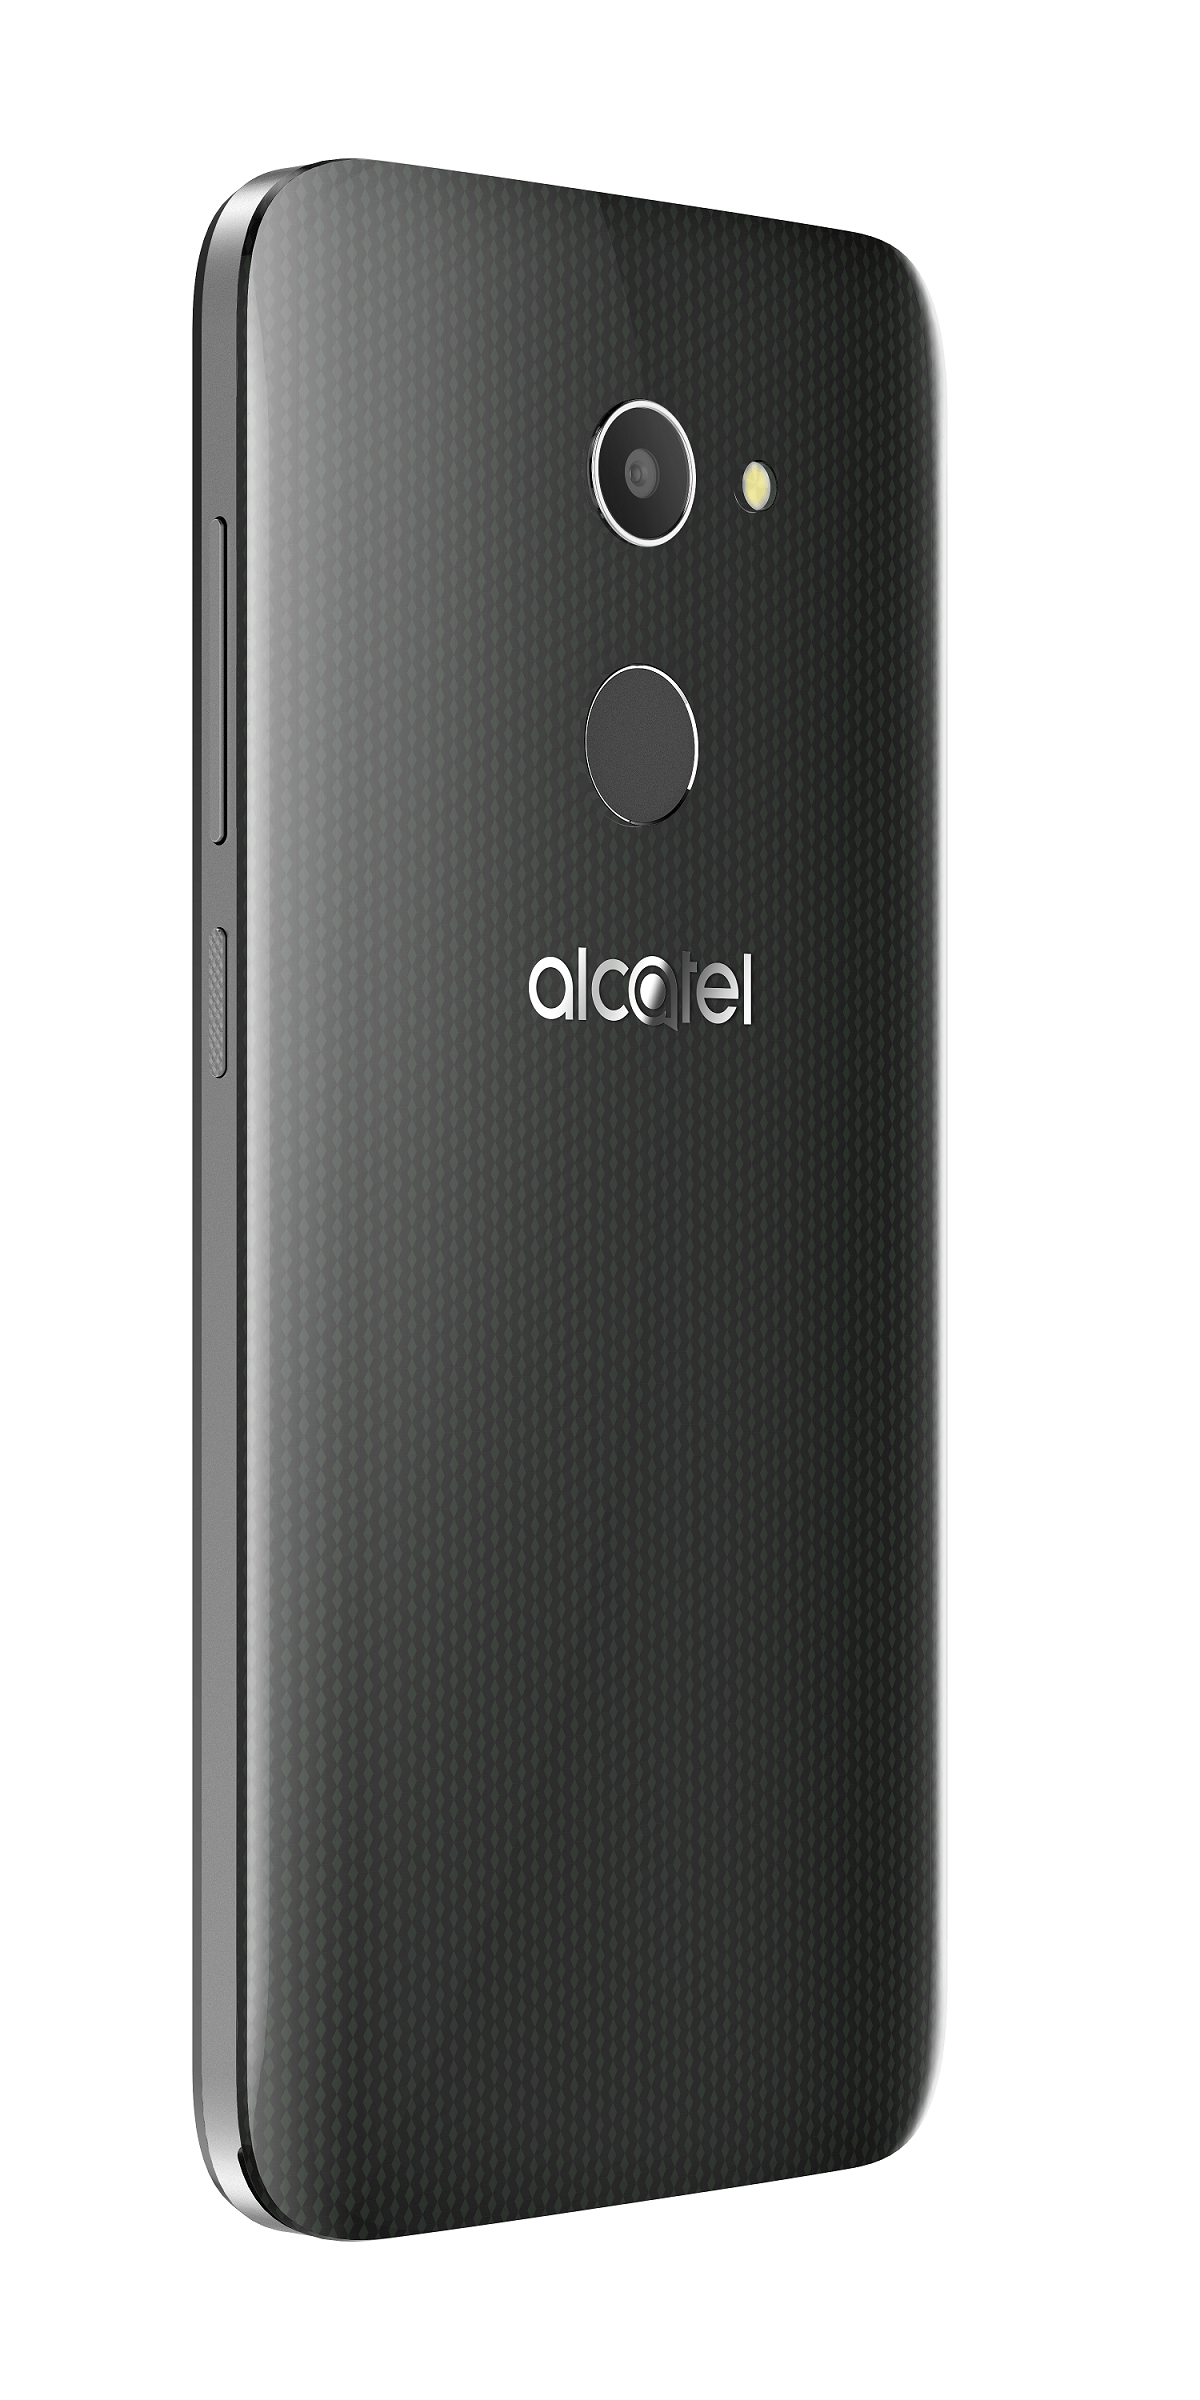 Alcatel A3, móvil barato con sensor de huellas y buena cámara